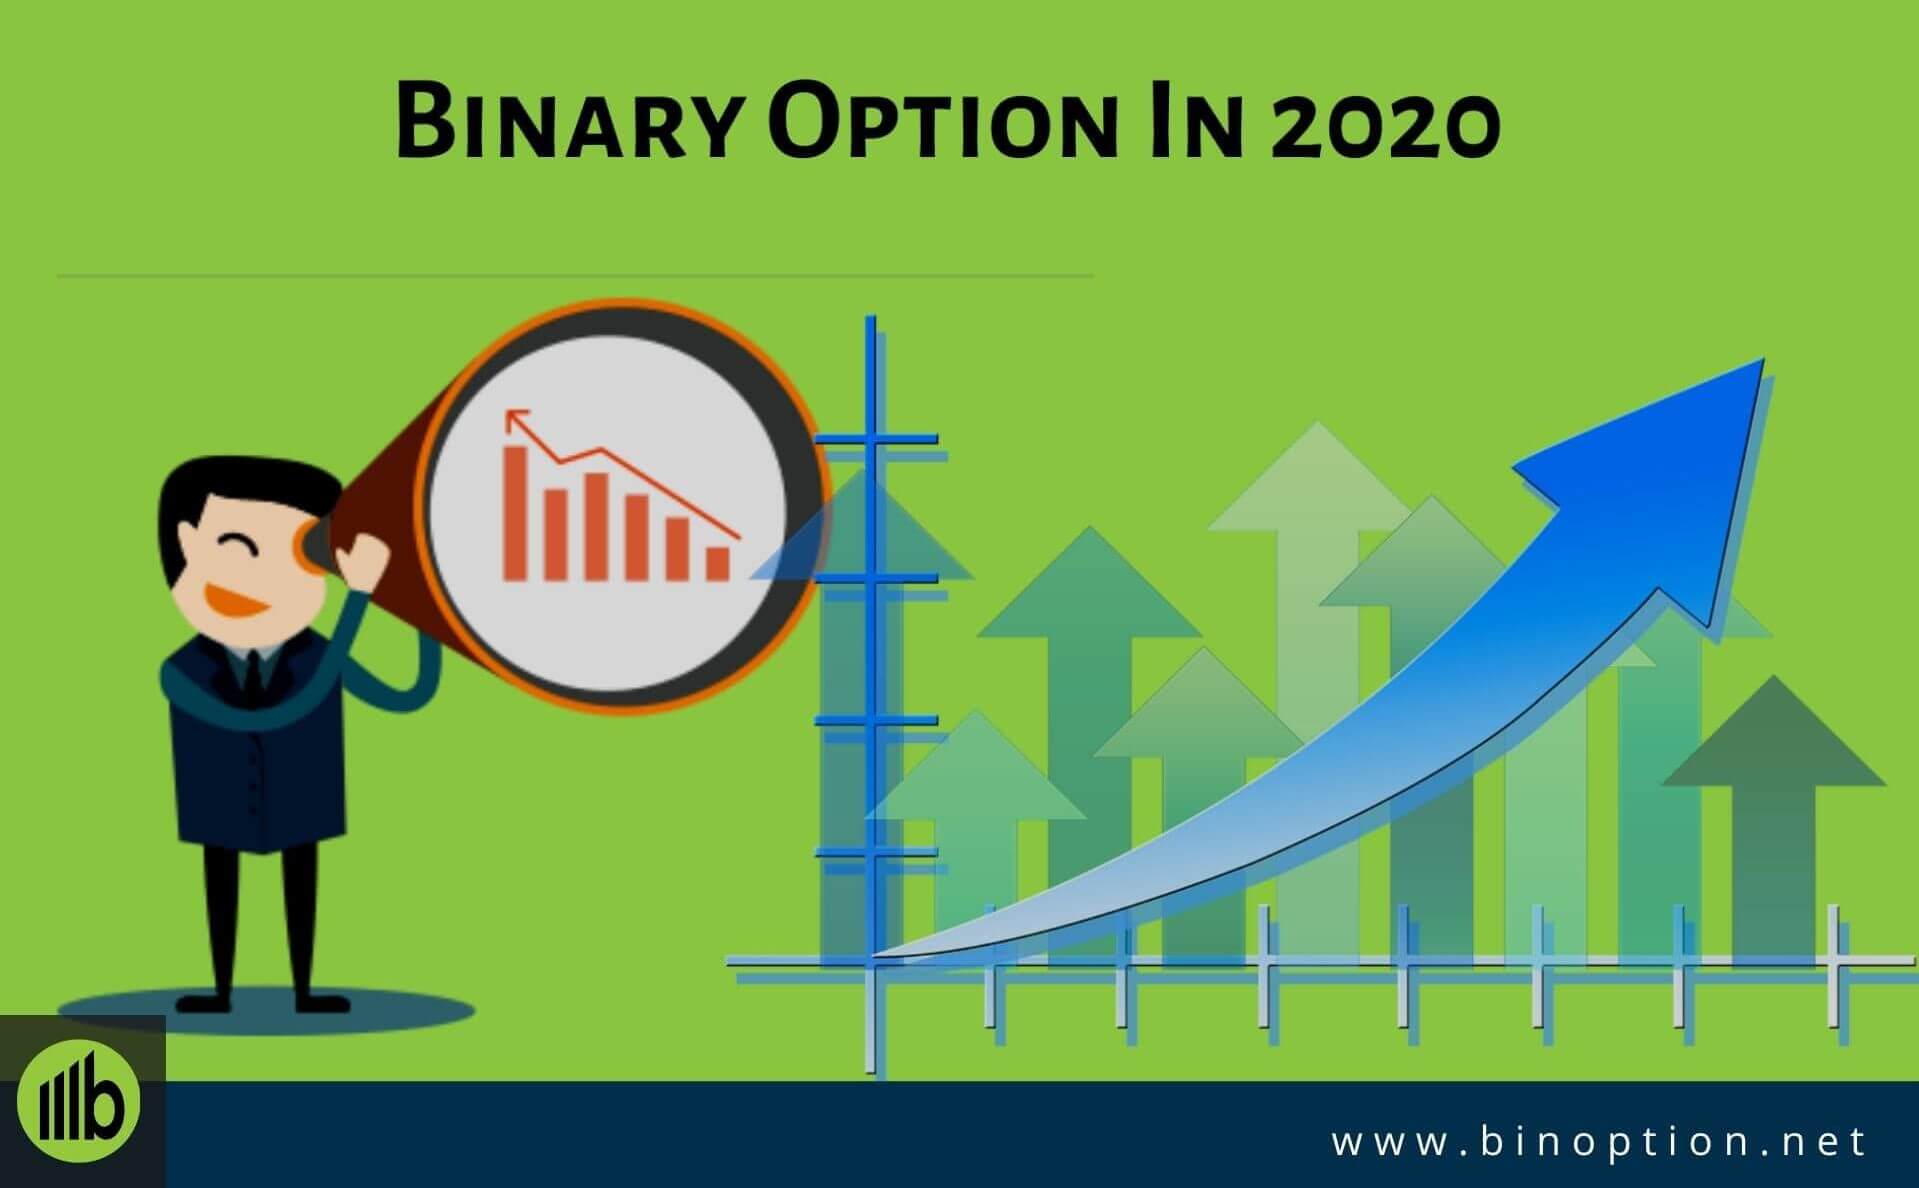 Esma binary options ban 2020